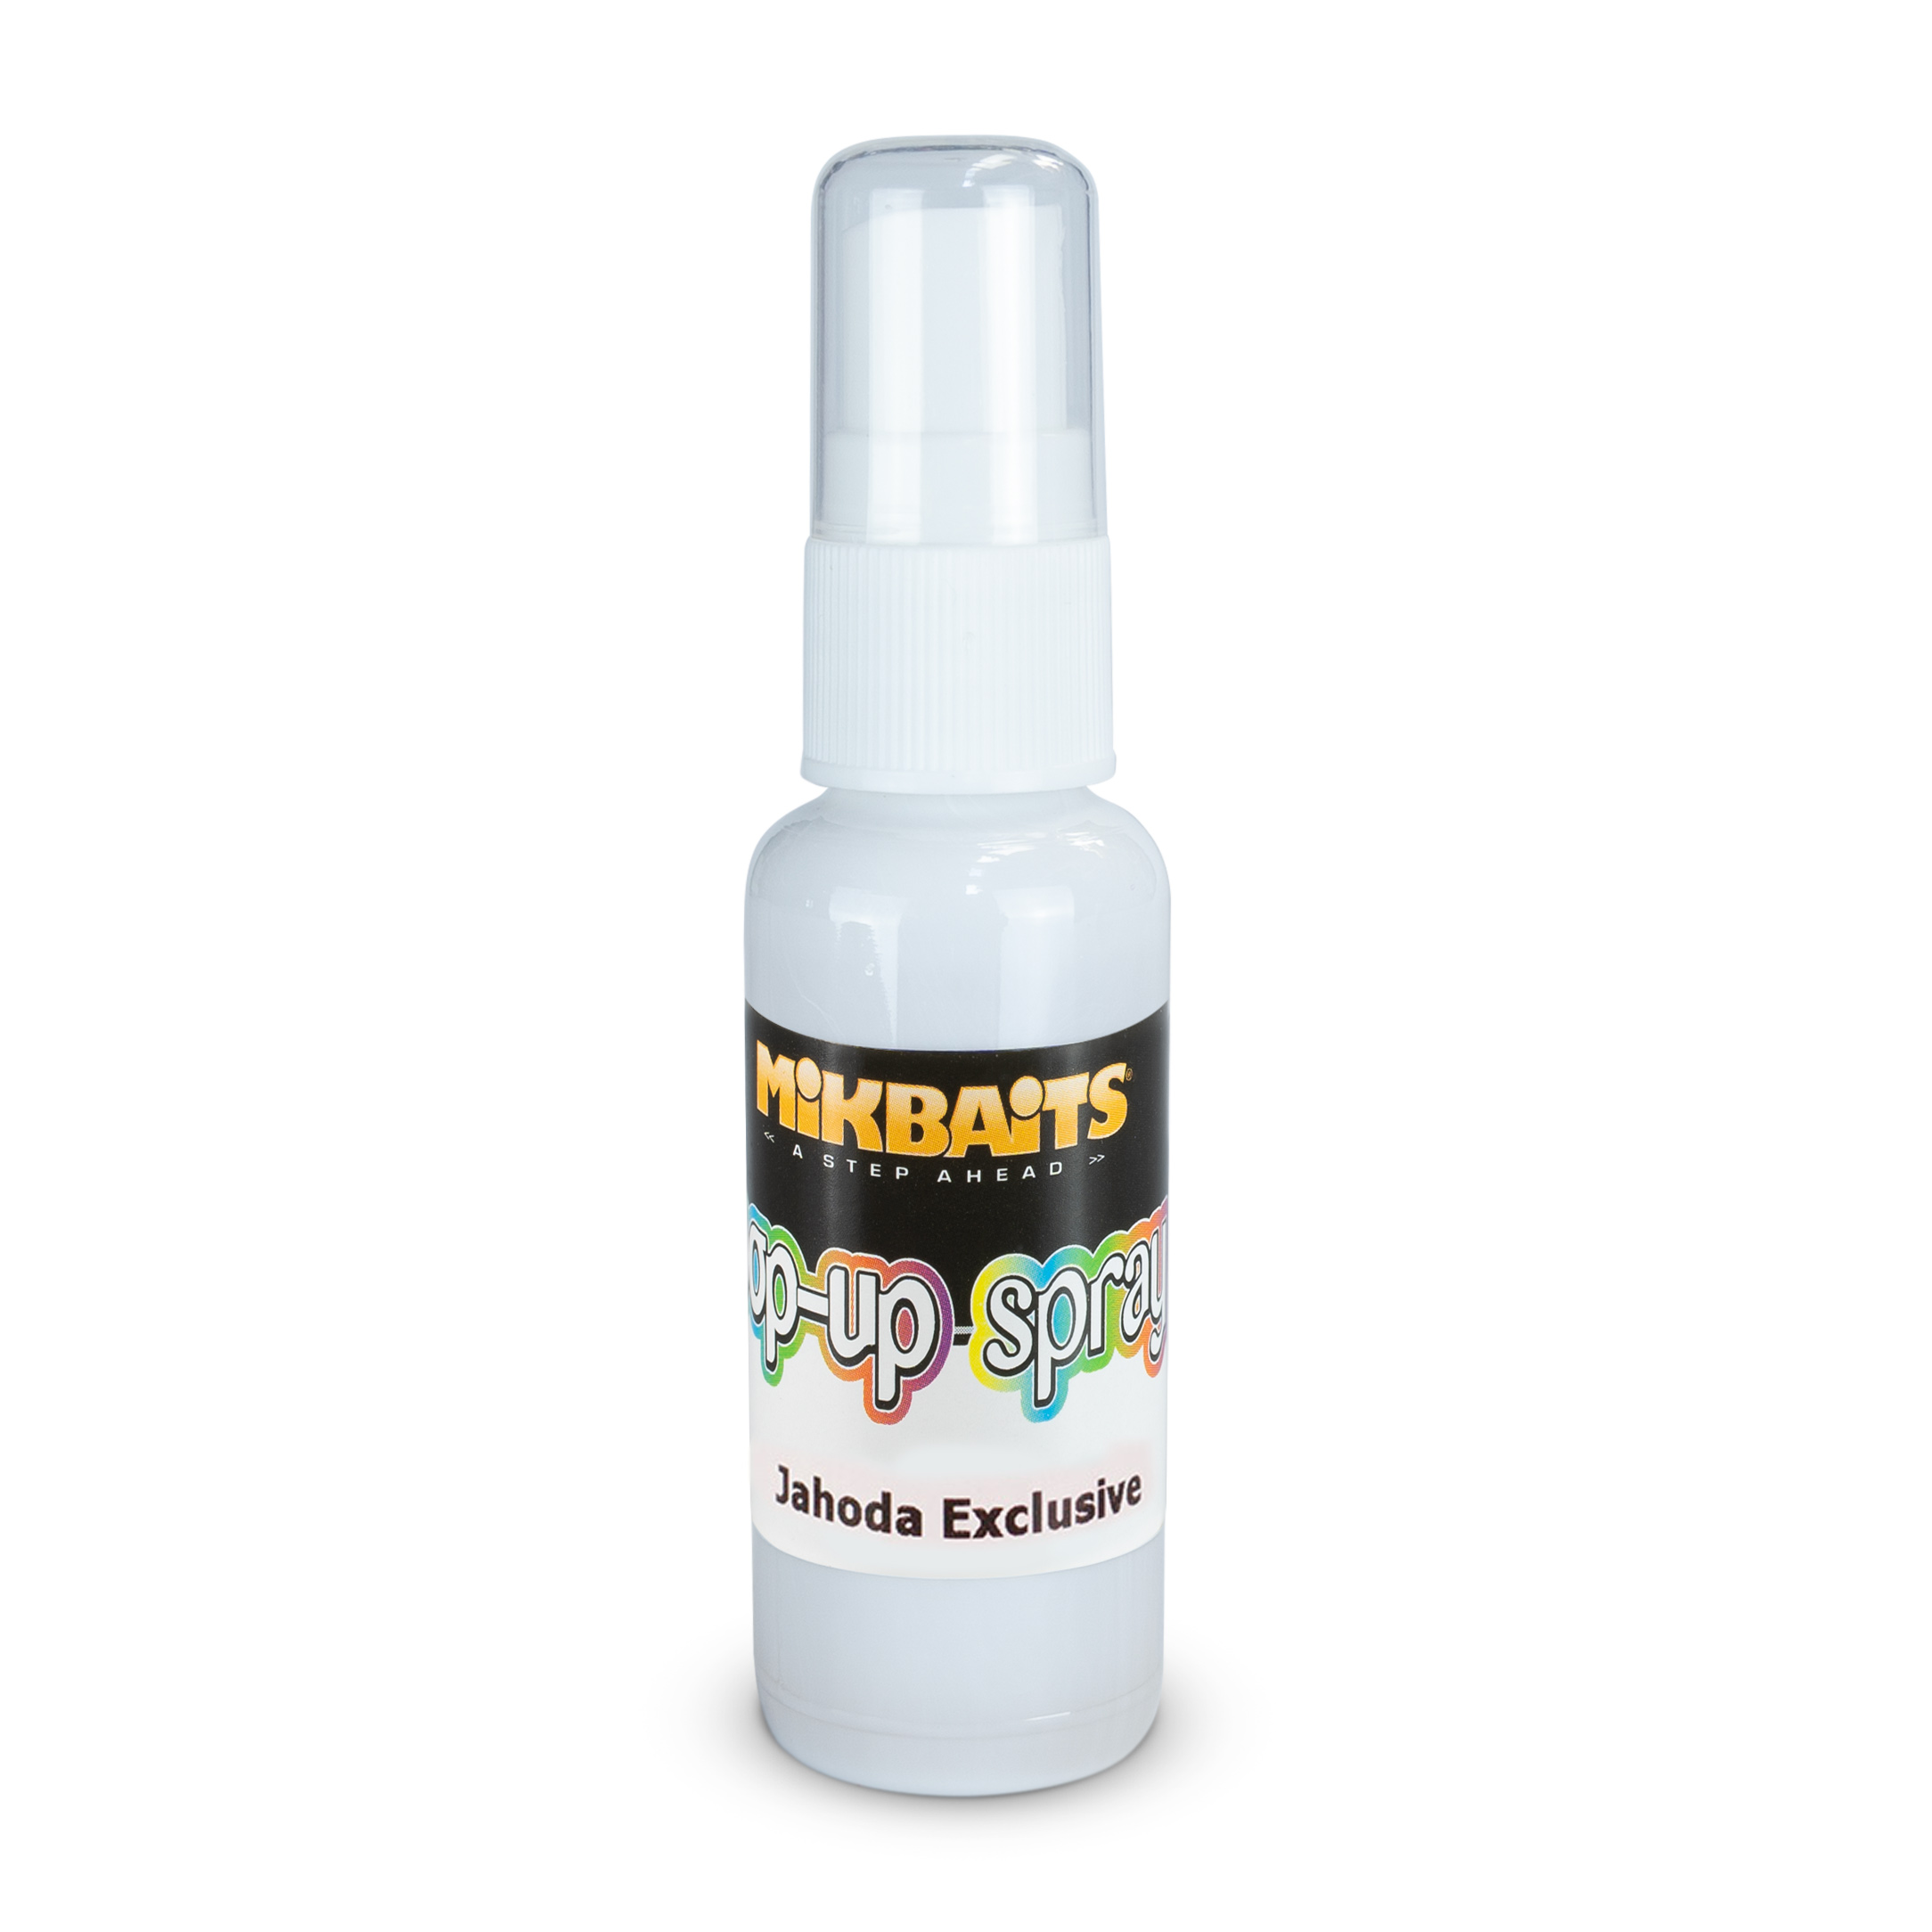 Pop-up spray 30ml - Jahoda Exclusive